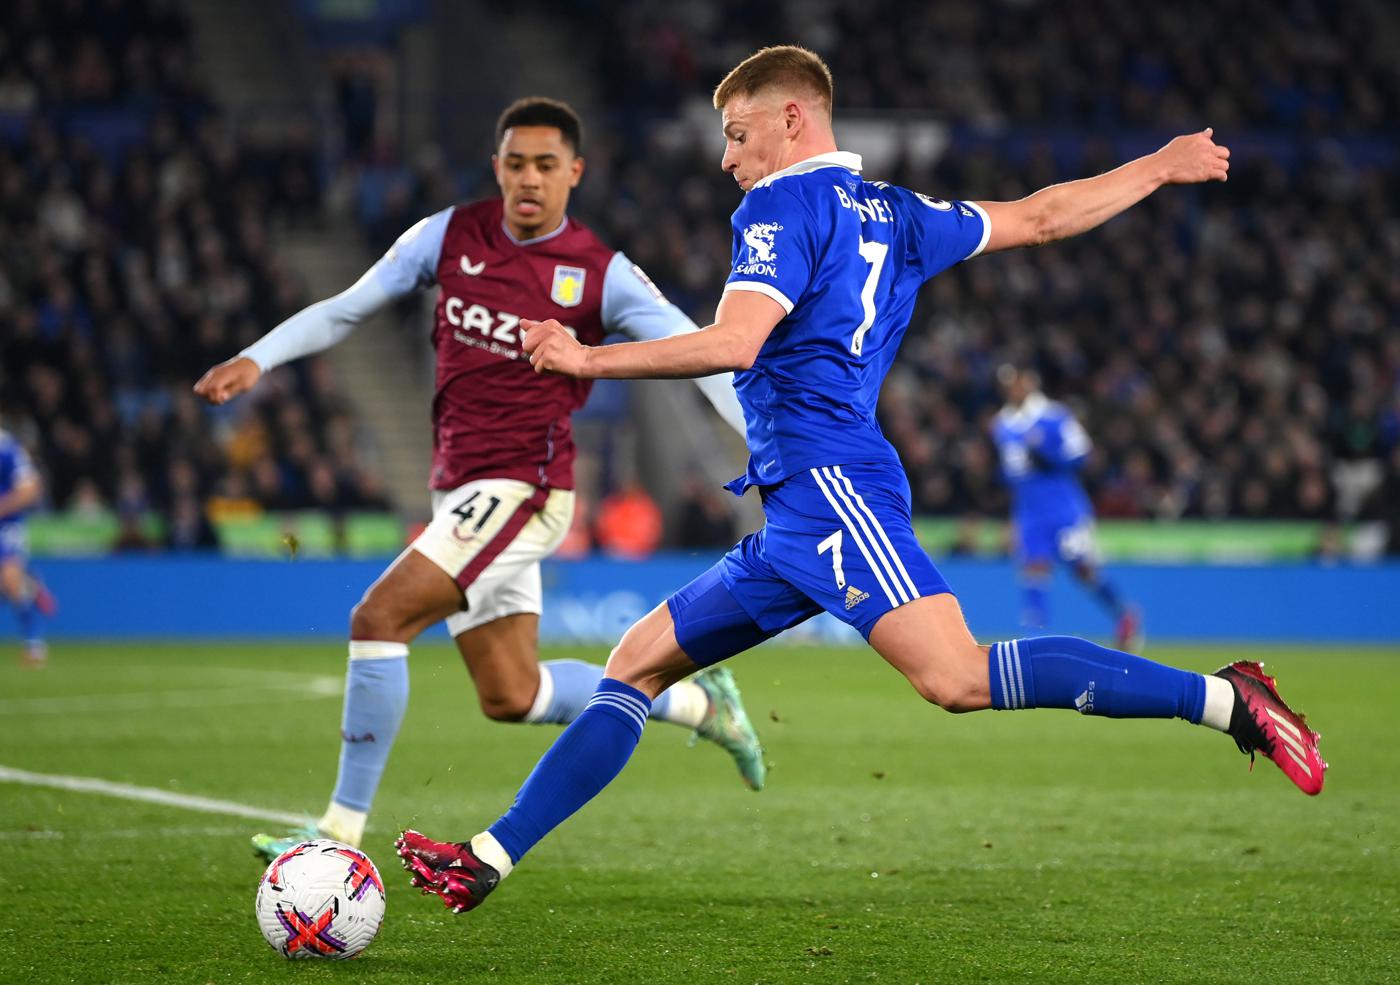 Leicester gegen Aston Villa - 1:2. Englische Meisterschaft, Runde 7. Spielbericht, Statistik